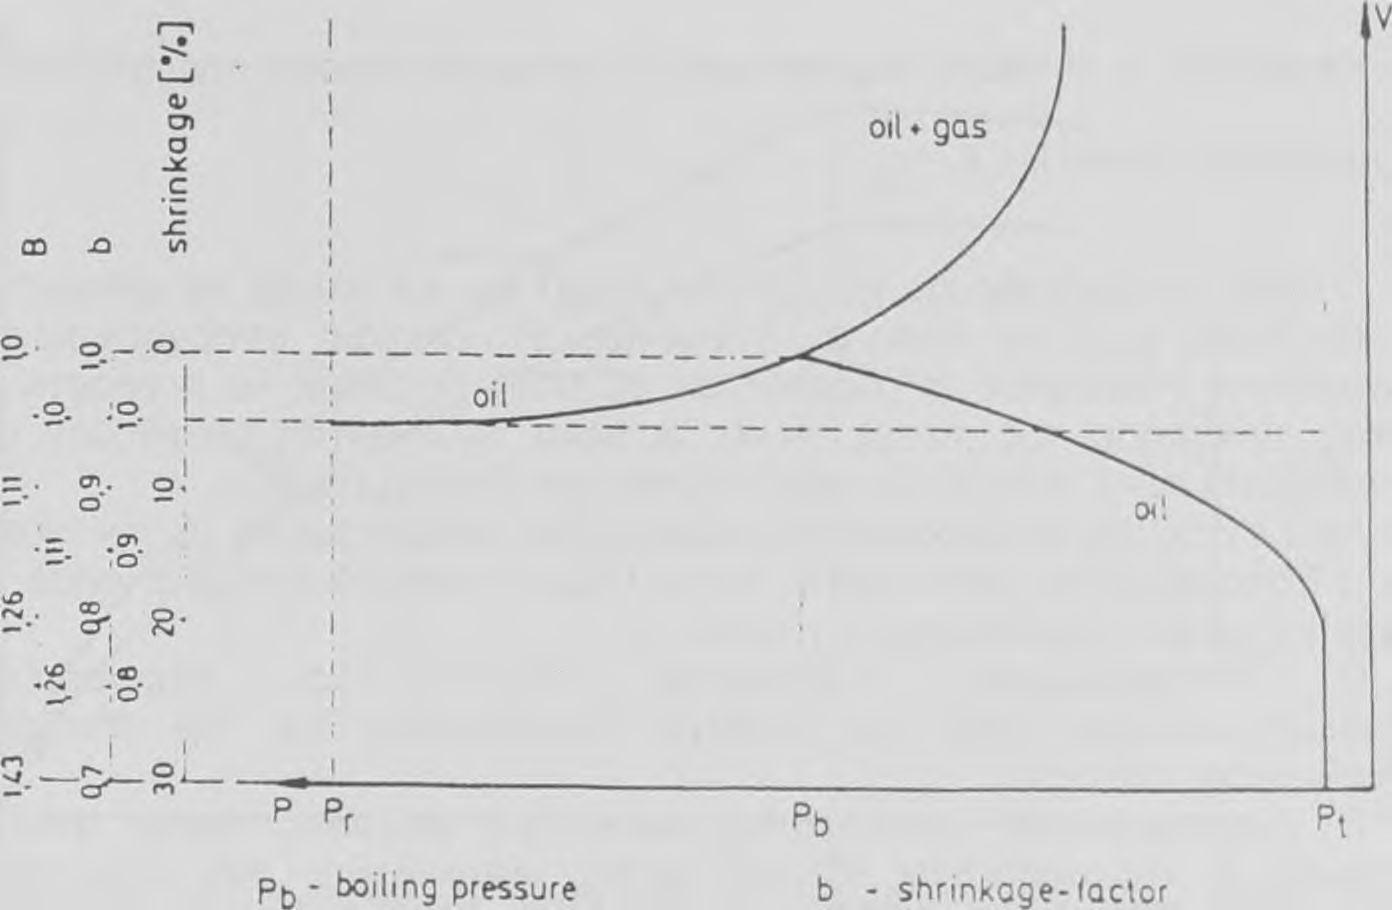 Συνήθως η ένταση της πίεσης στο ρεζερβουάρ χρησιμοποιείται ως η σύσταση του όγκου, αλλά περιστασιακά χρησιμοποιείται επίσης η πίεση σχηματισμού φυσαλίδας Pb (πίεση δοχείου).